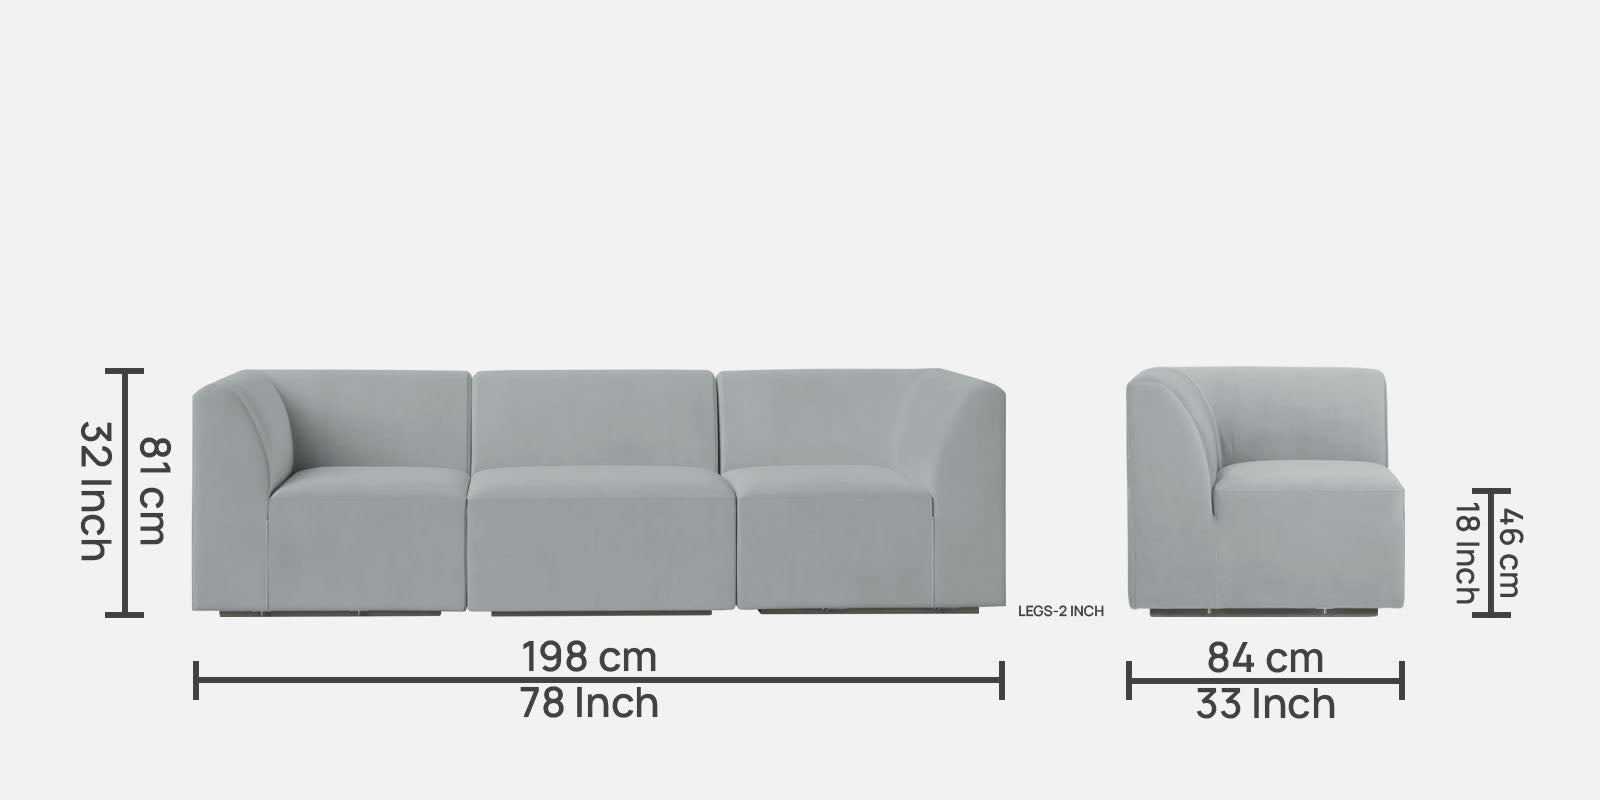 Bufa Velvet 3 Seater Sofa in Pearl grey Colour